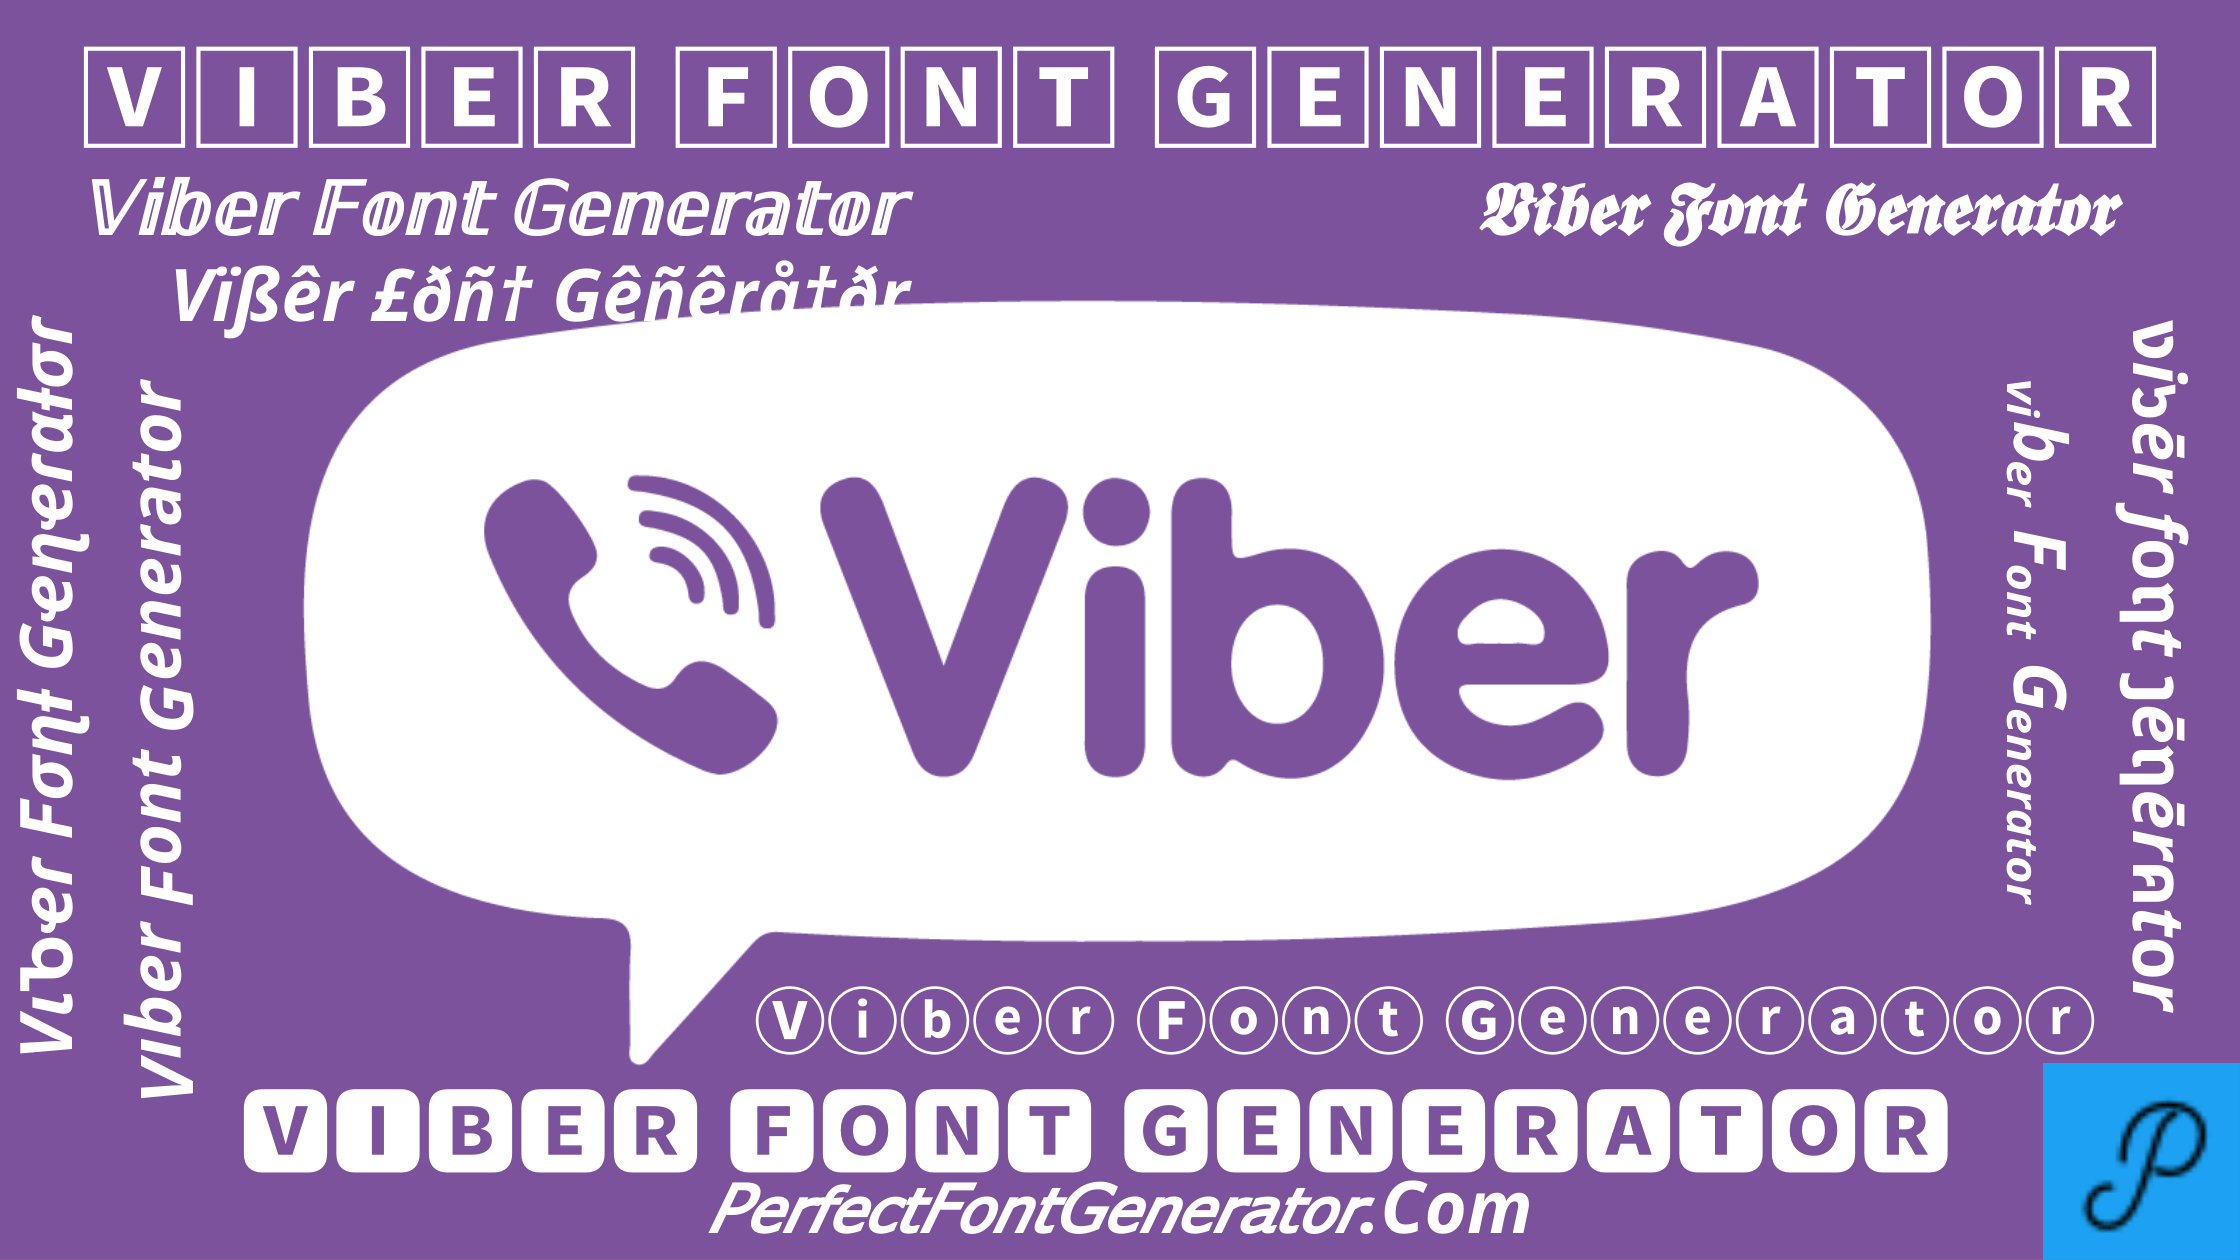 Rakuten Viber fancy font text generator online copy paste tool